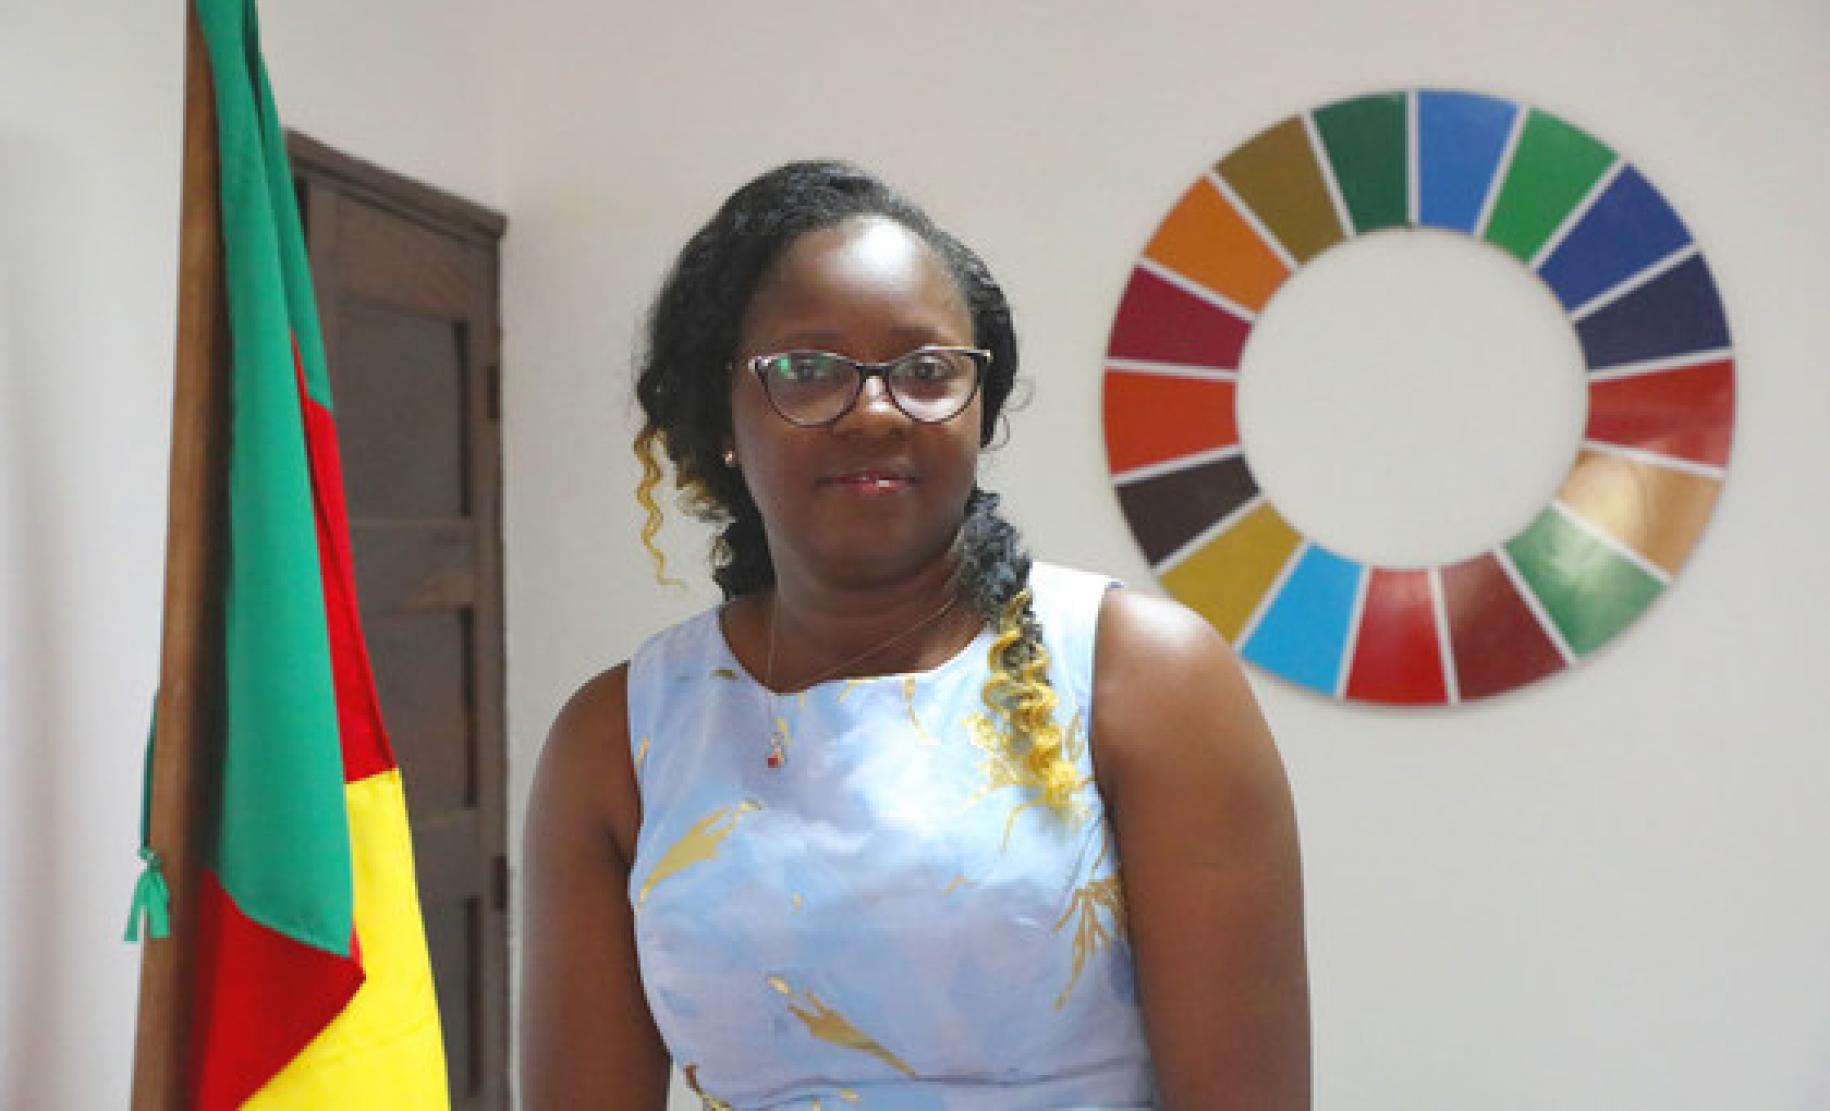 En la foto aparece Cecile Mawe, fundadora y presidenta de Jeunes en Action pour le Développement Durable (JADD), Camerún, junto a la bandera de Camerún y la rueda de los ODS.